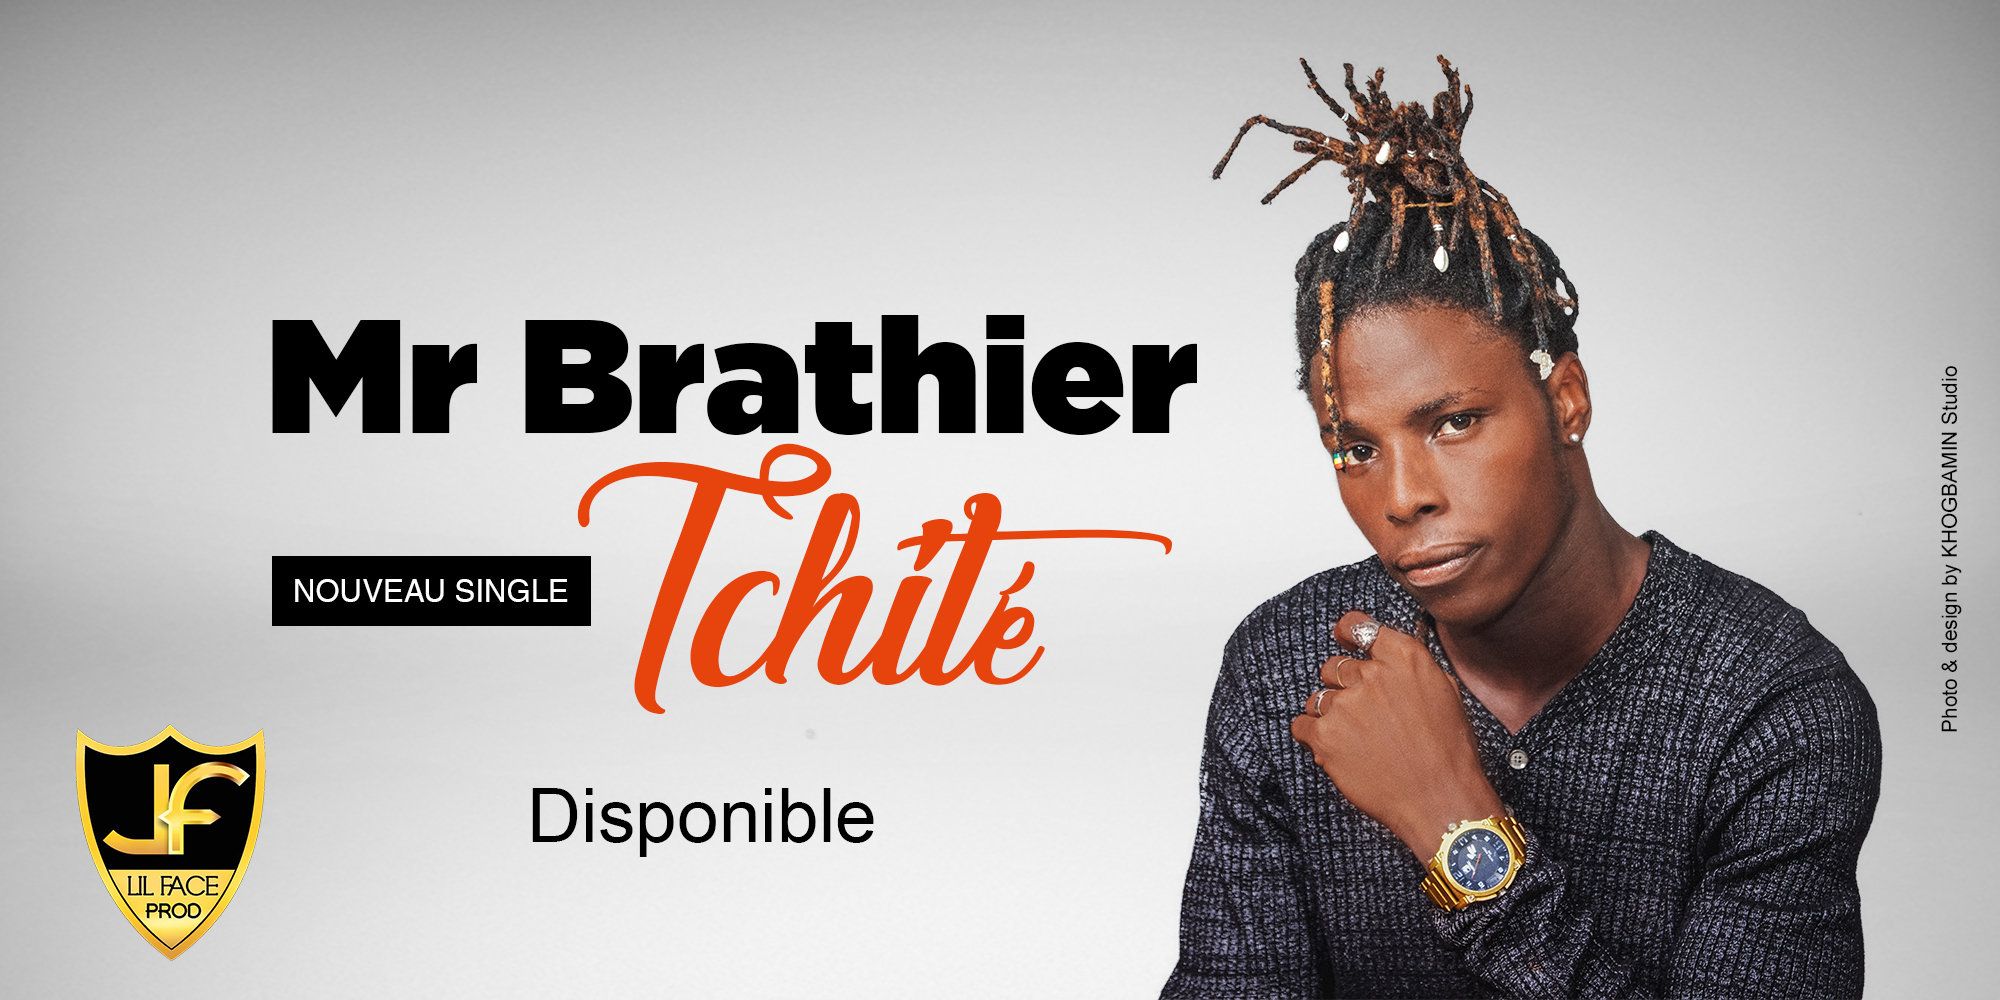 Mr Brathier motive et prie pour ses fans dans son nouveau single «Tchité»